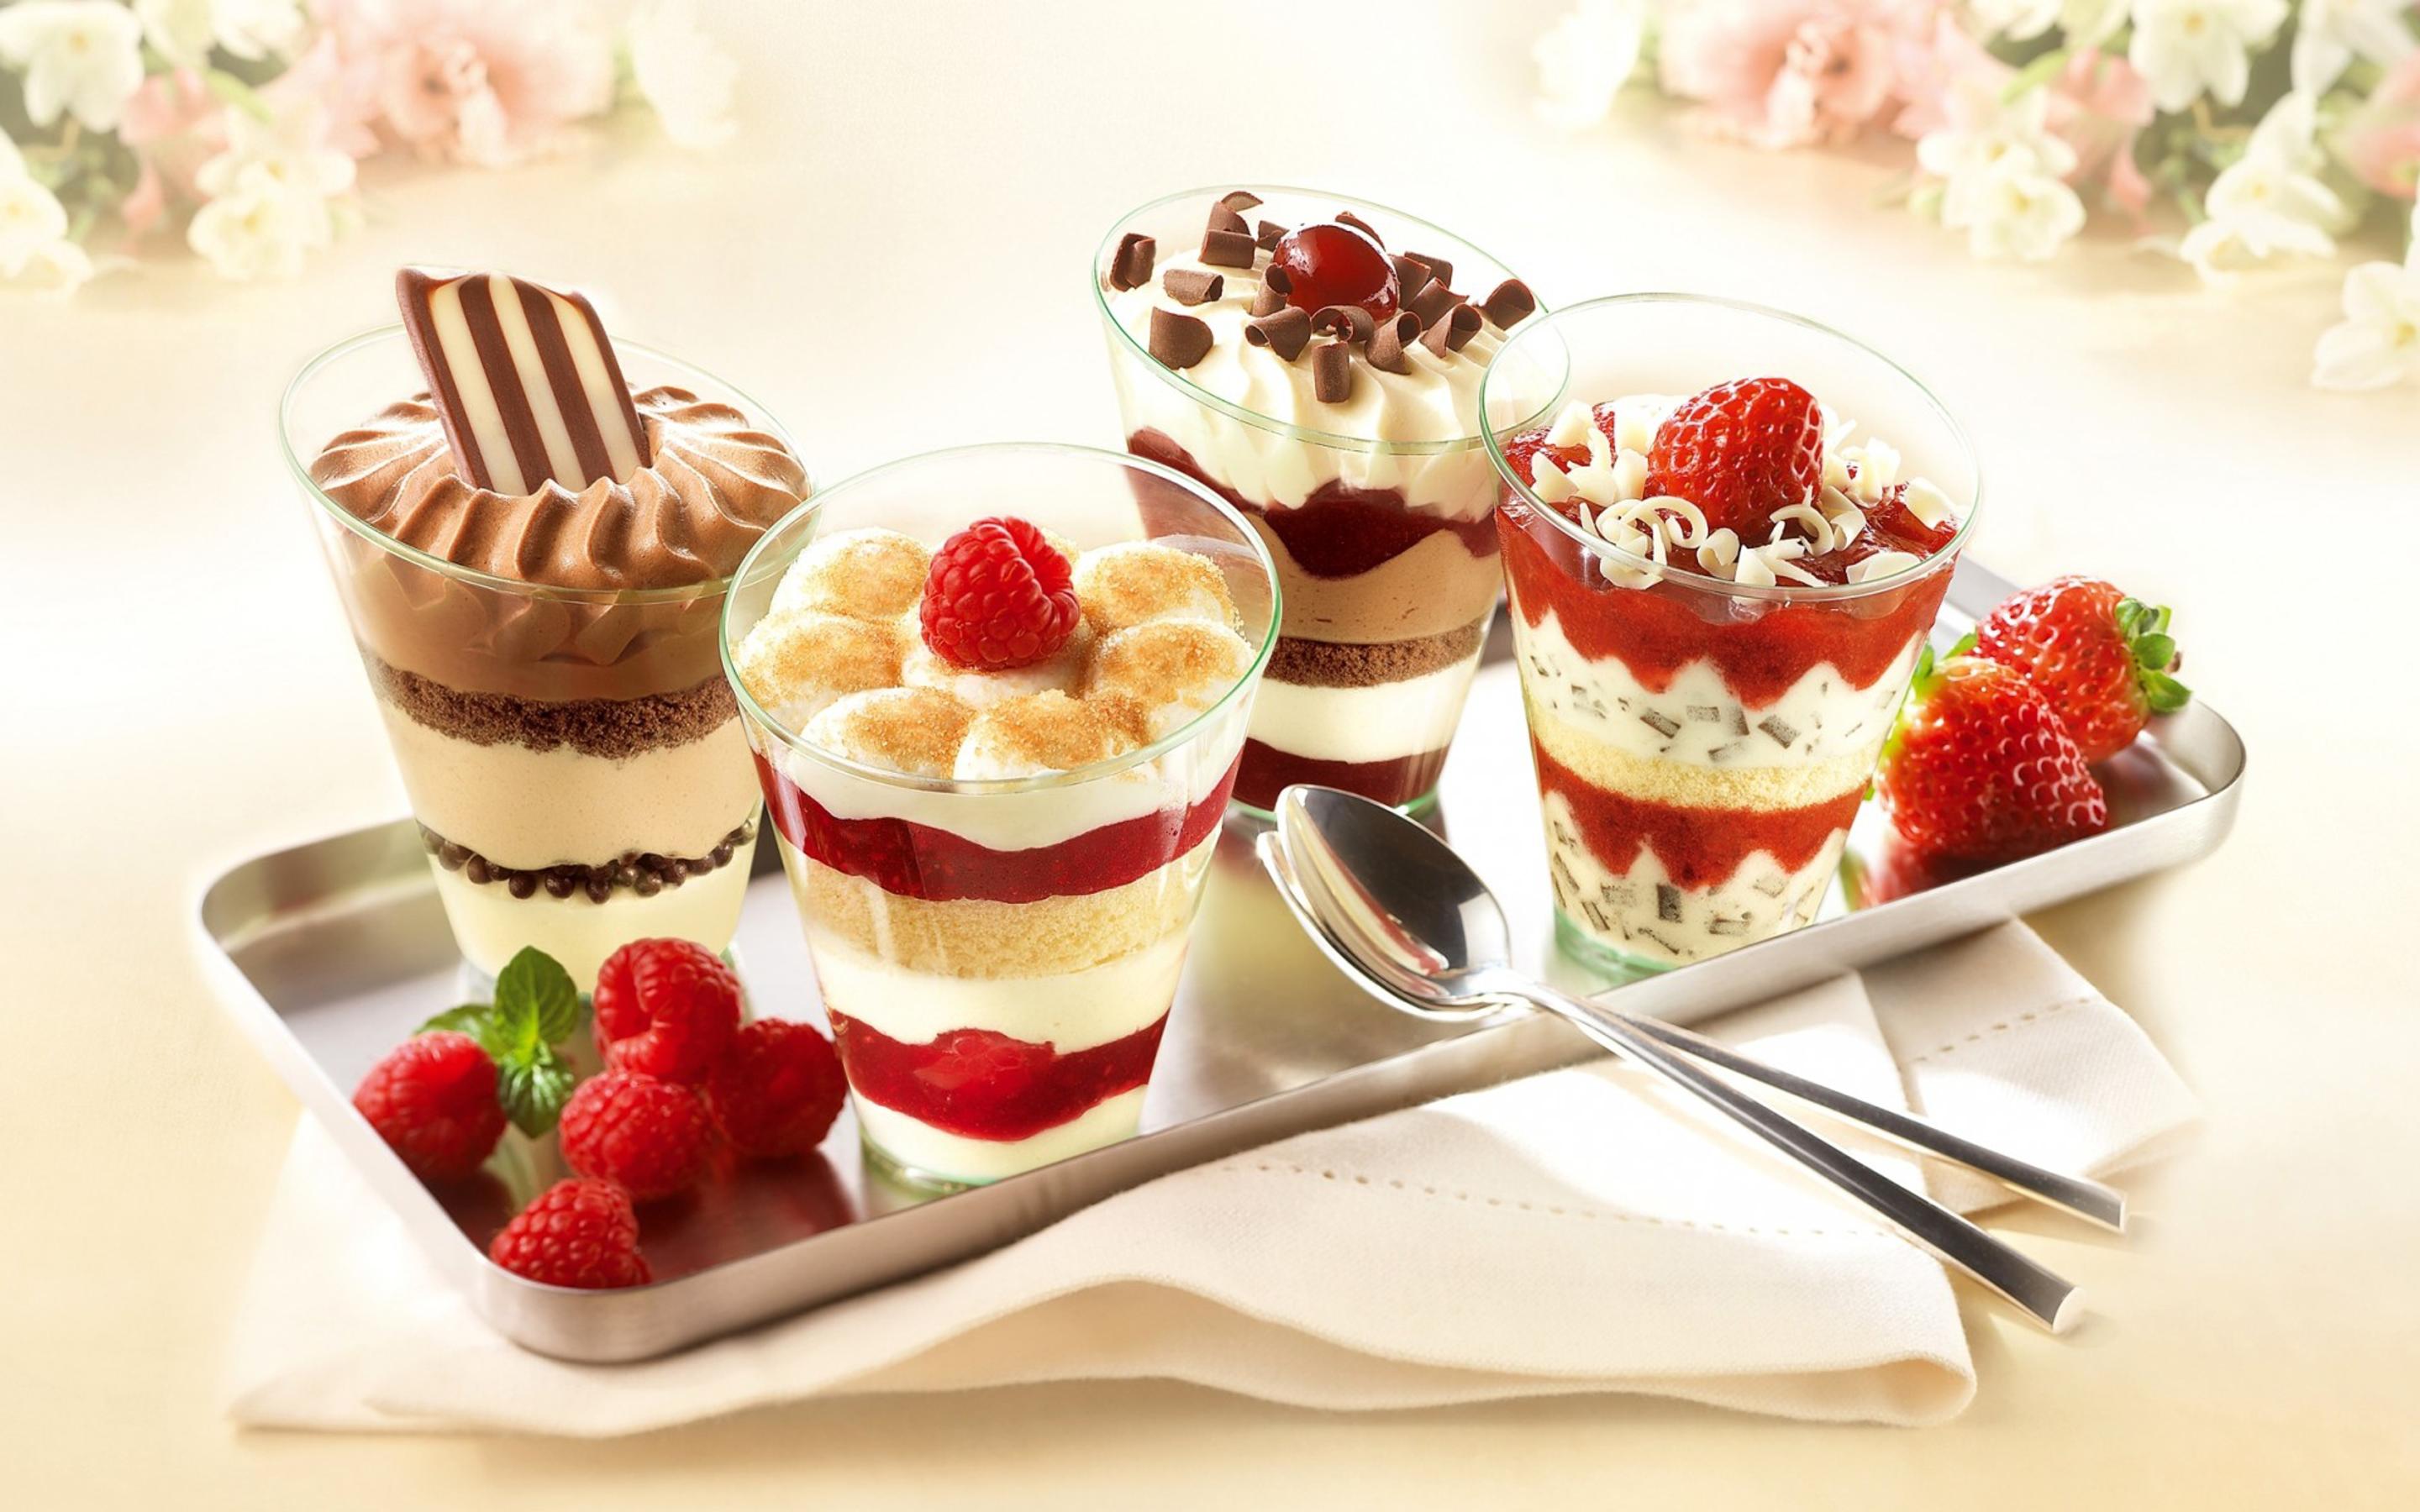 Tiramisu ice cream - Delicious summer dessert